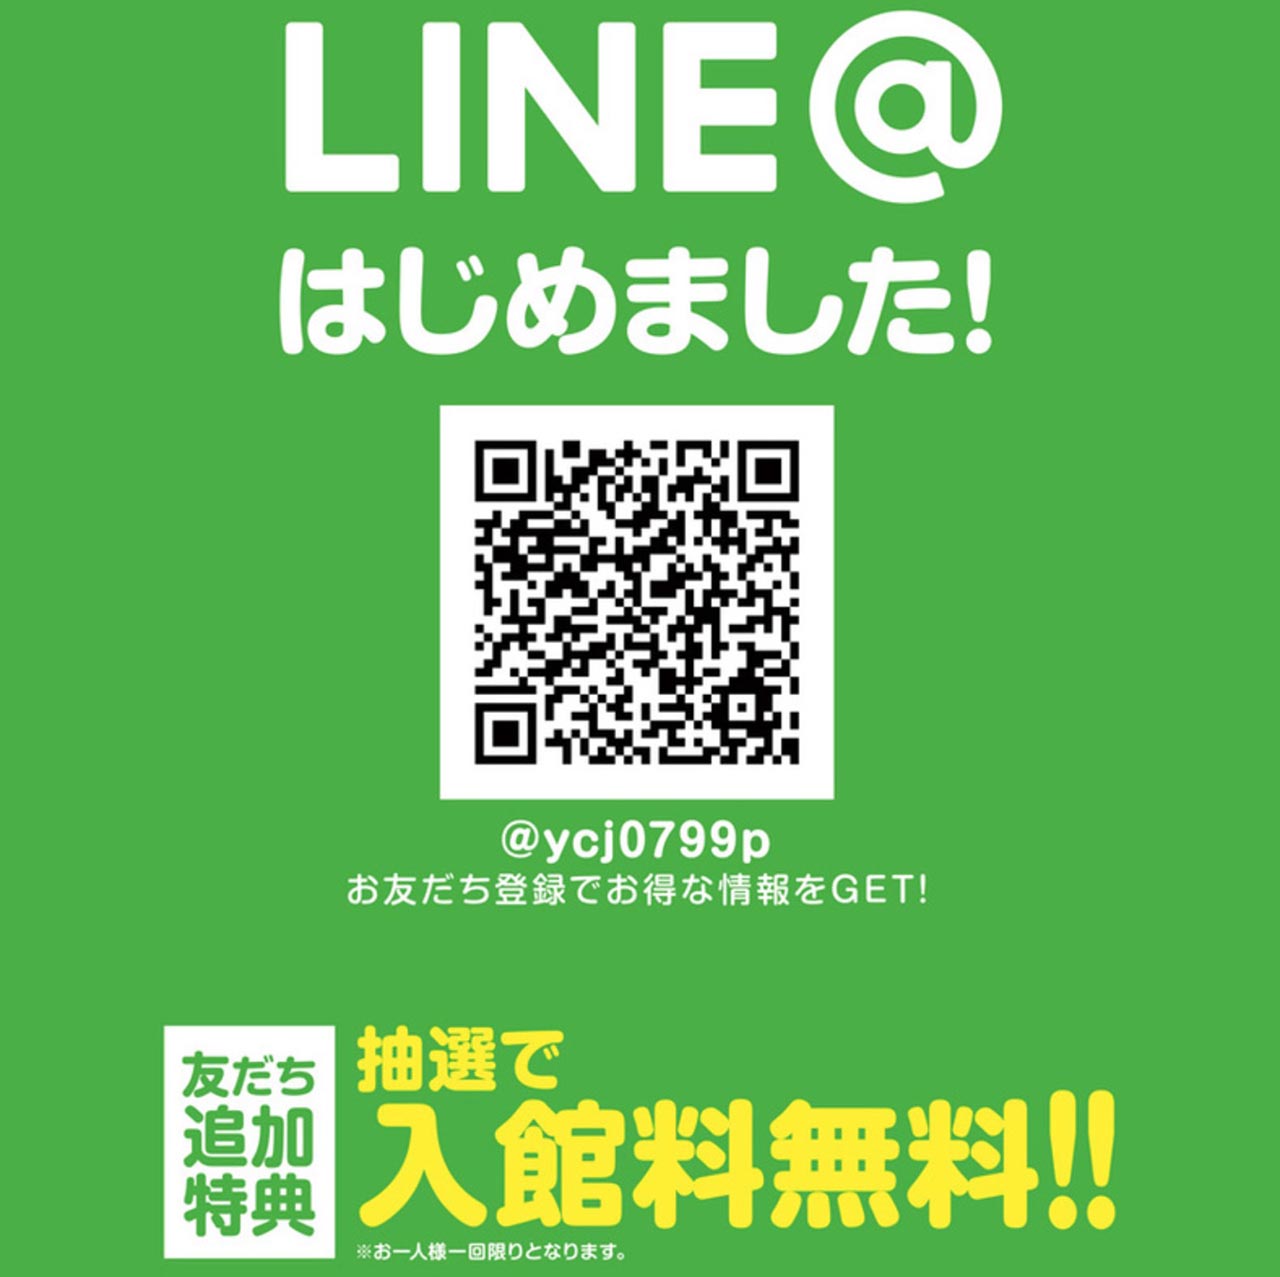 中津川のクアリゾートのLINE@